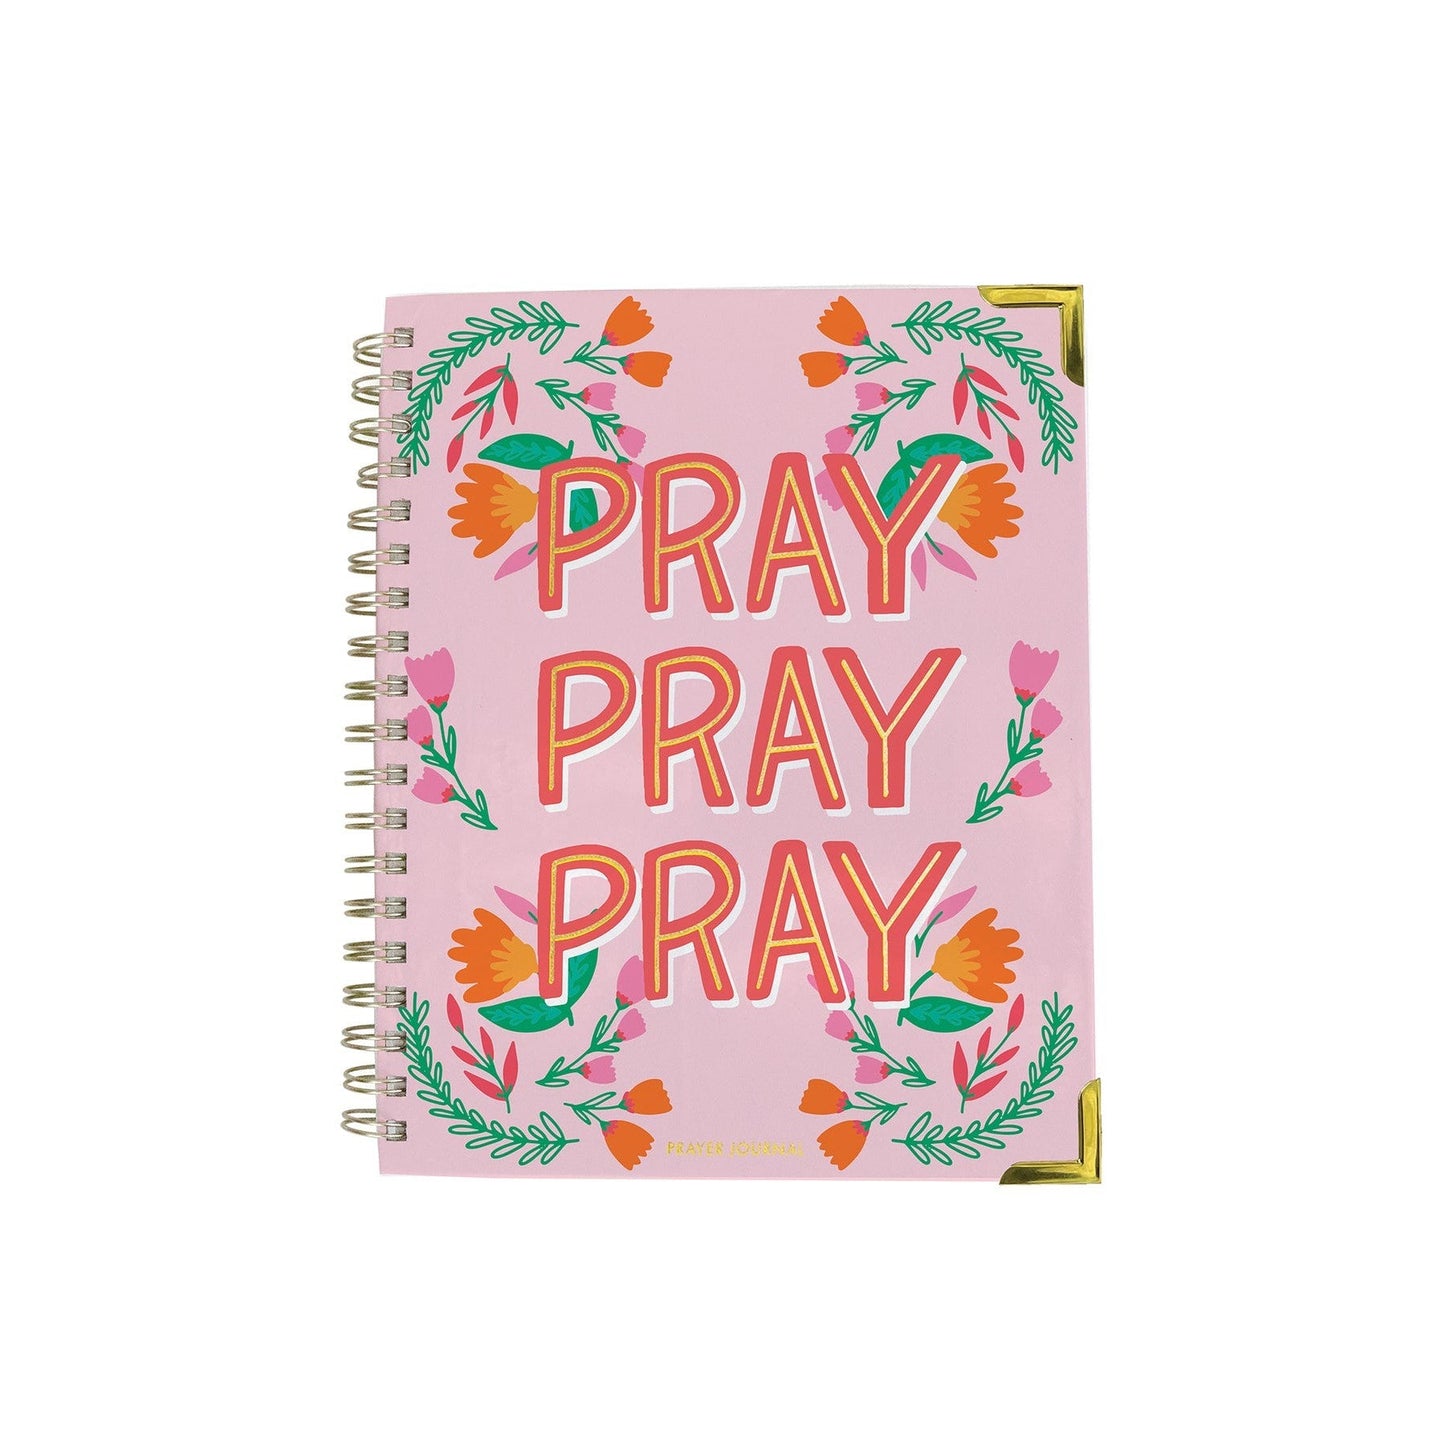 Pray, Pray, Pray Prayer Journal